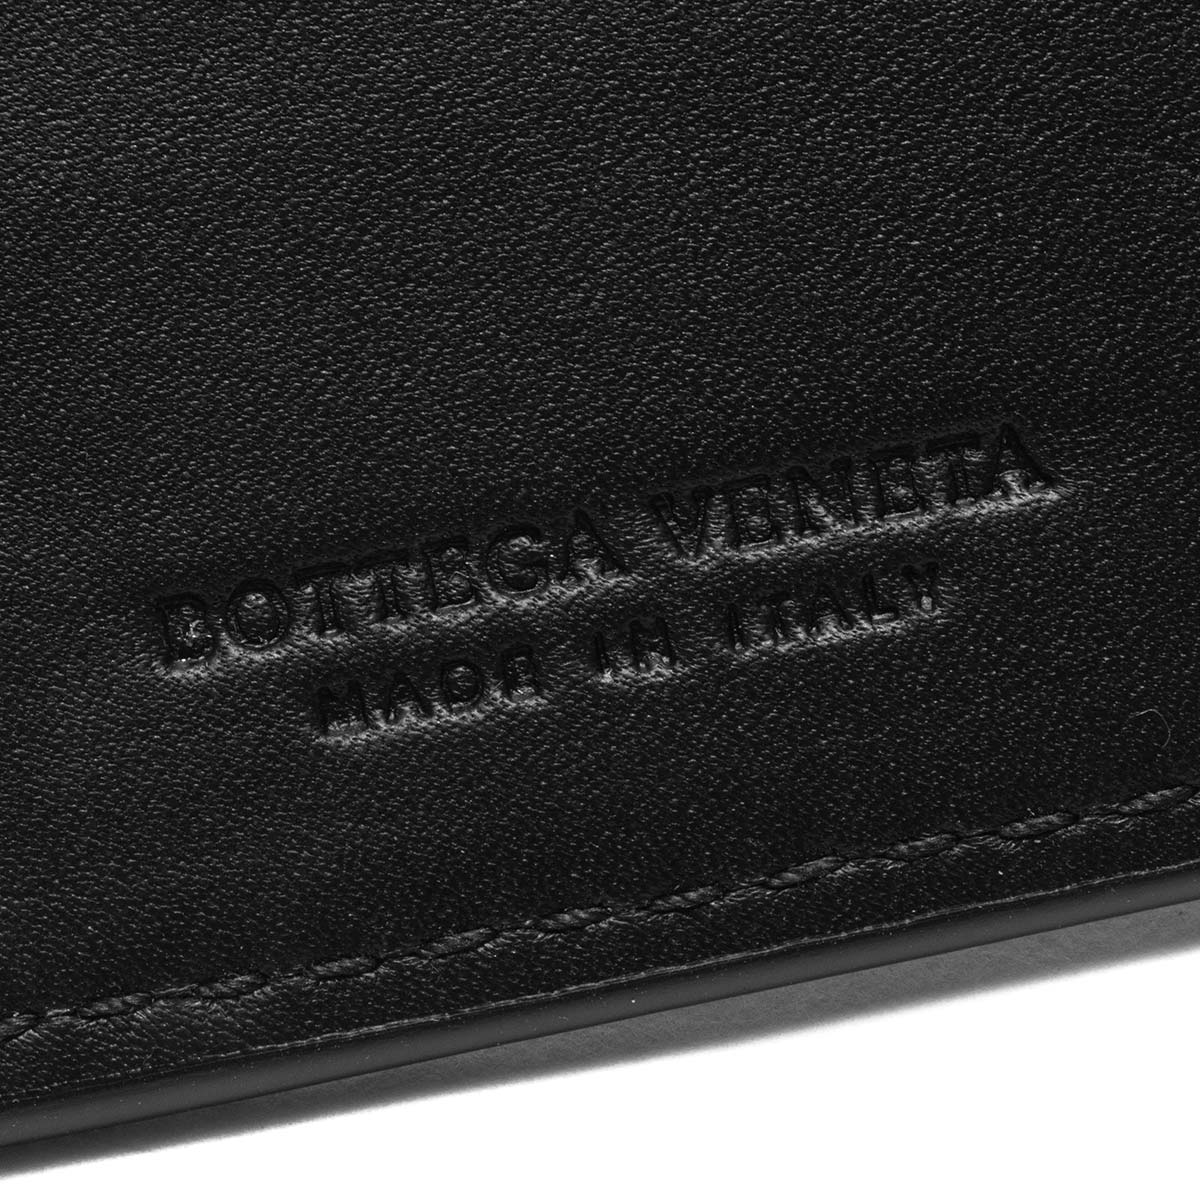 ボッテガヴェネタ (ボッテガ・ヴェネタ) カードケース/クレジットカードケース メンズ イントレチャート ブラック 464902 V4651 1000  BOTTEGA VENETA